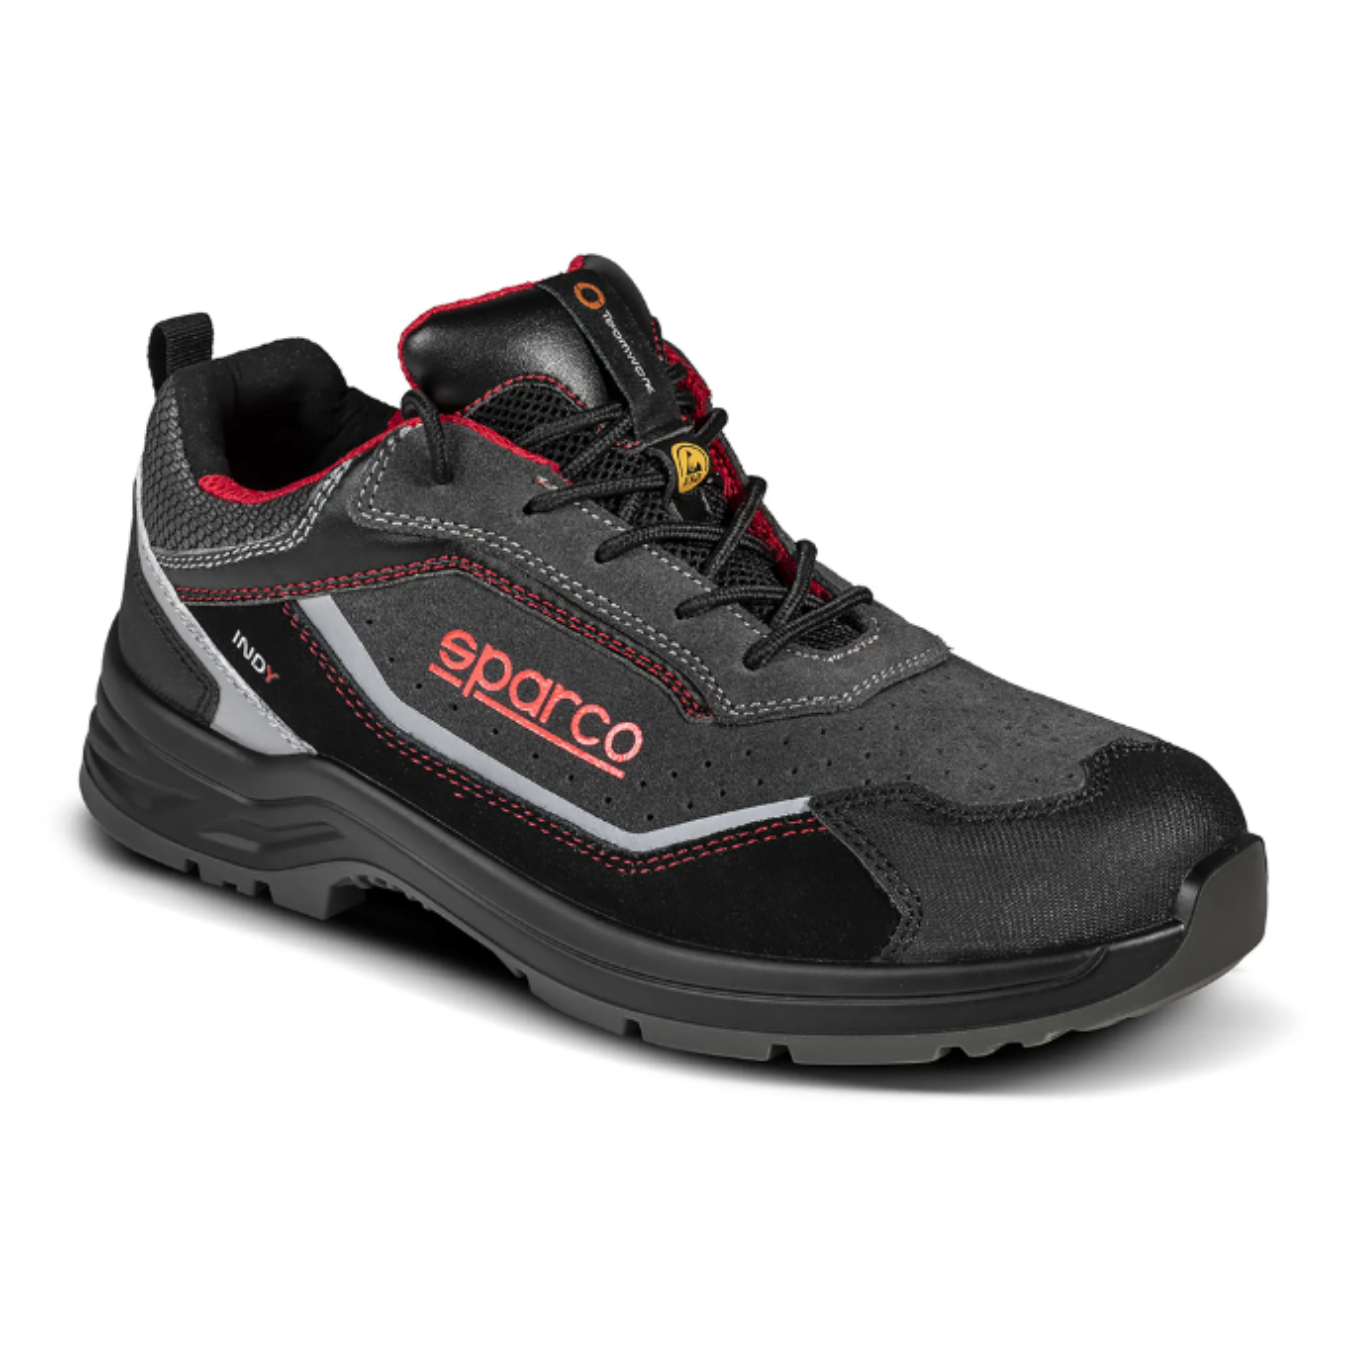 Chaussures SPARCO SL-17 rouge/noir pour homme- En vente sur ORECA STORE